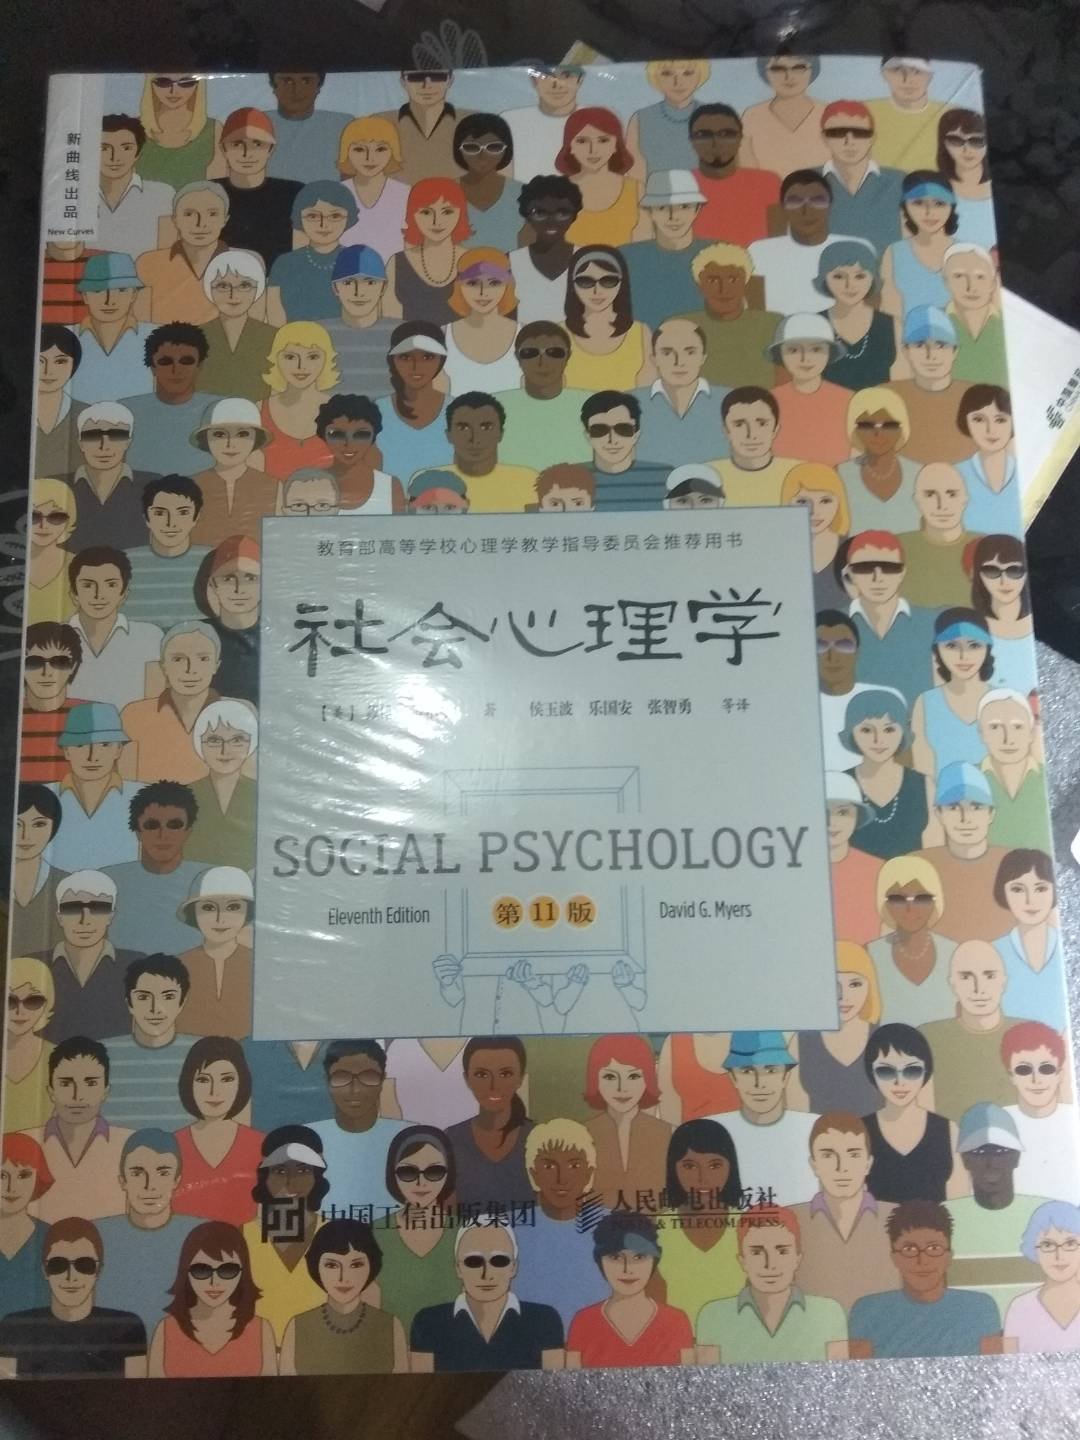 社会心理学（第11版 中文平装版）没想到都出到11版了 算是大部头了 折扣力度挺大了